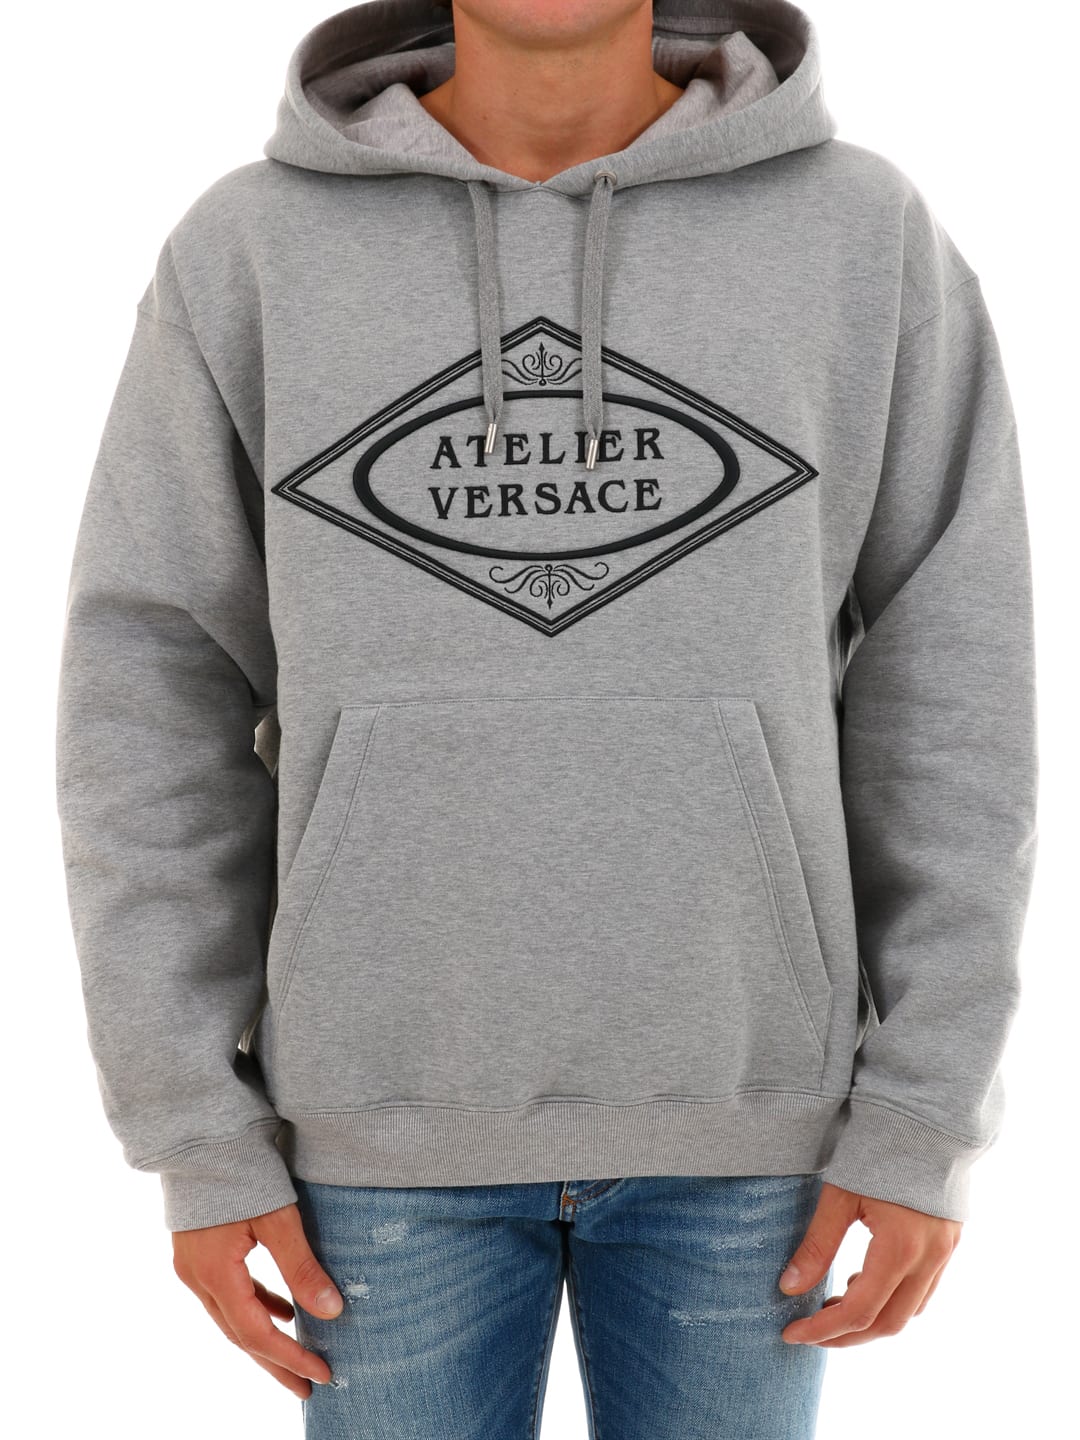 Versace Sweatshirt Atelier Versace